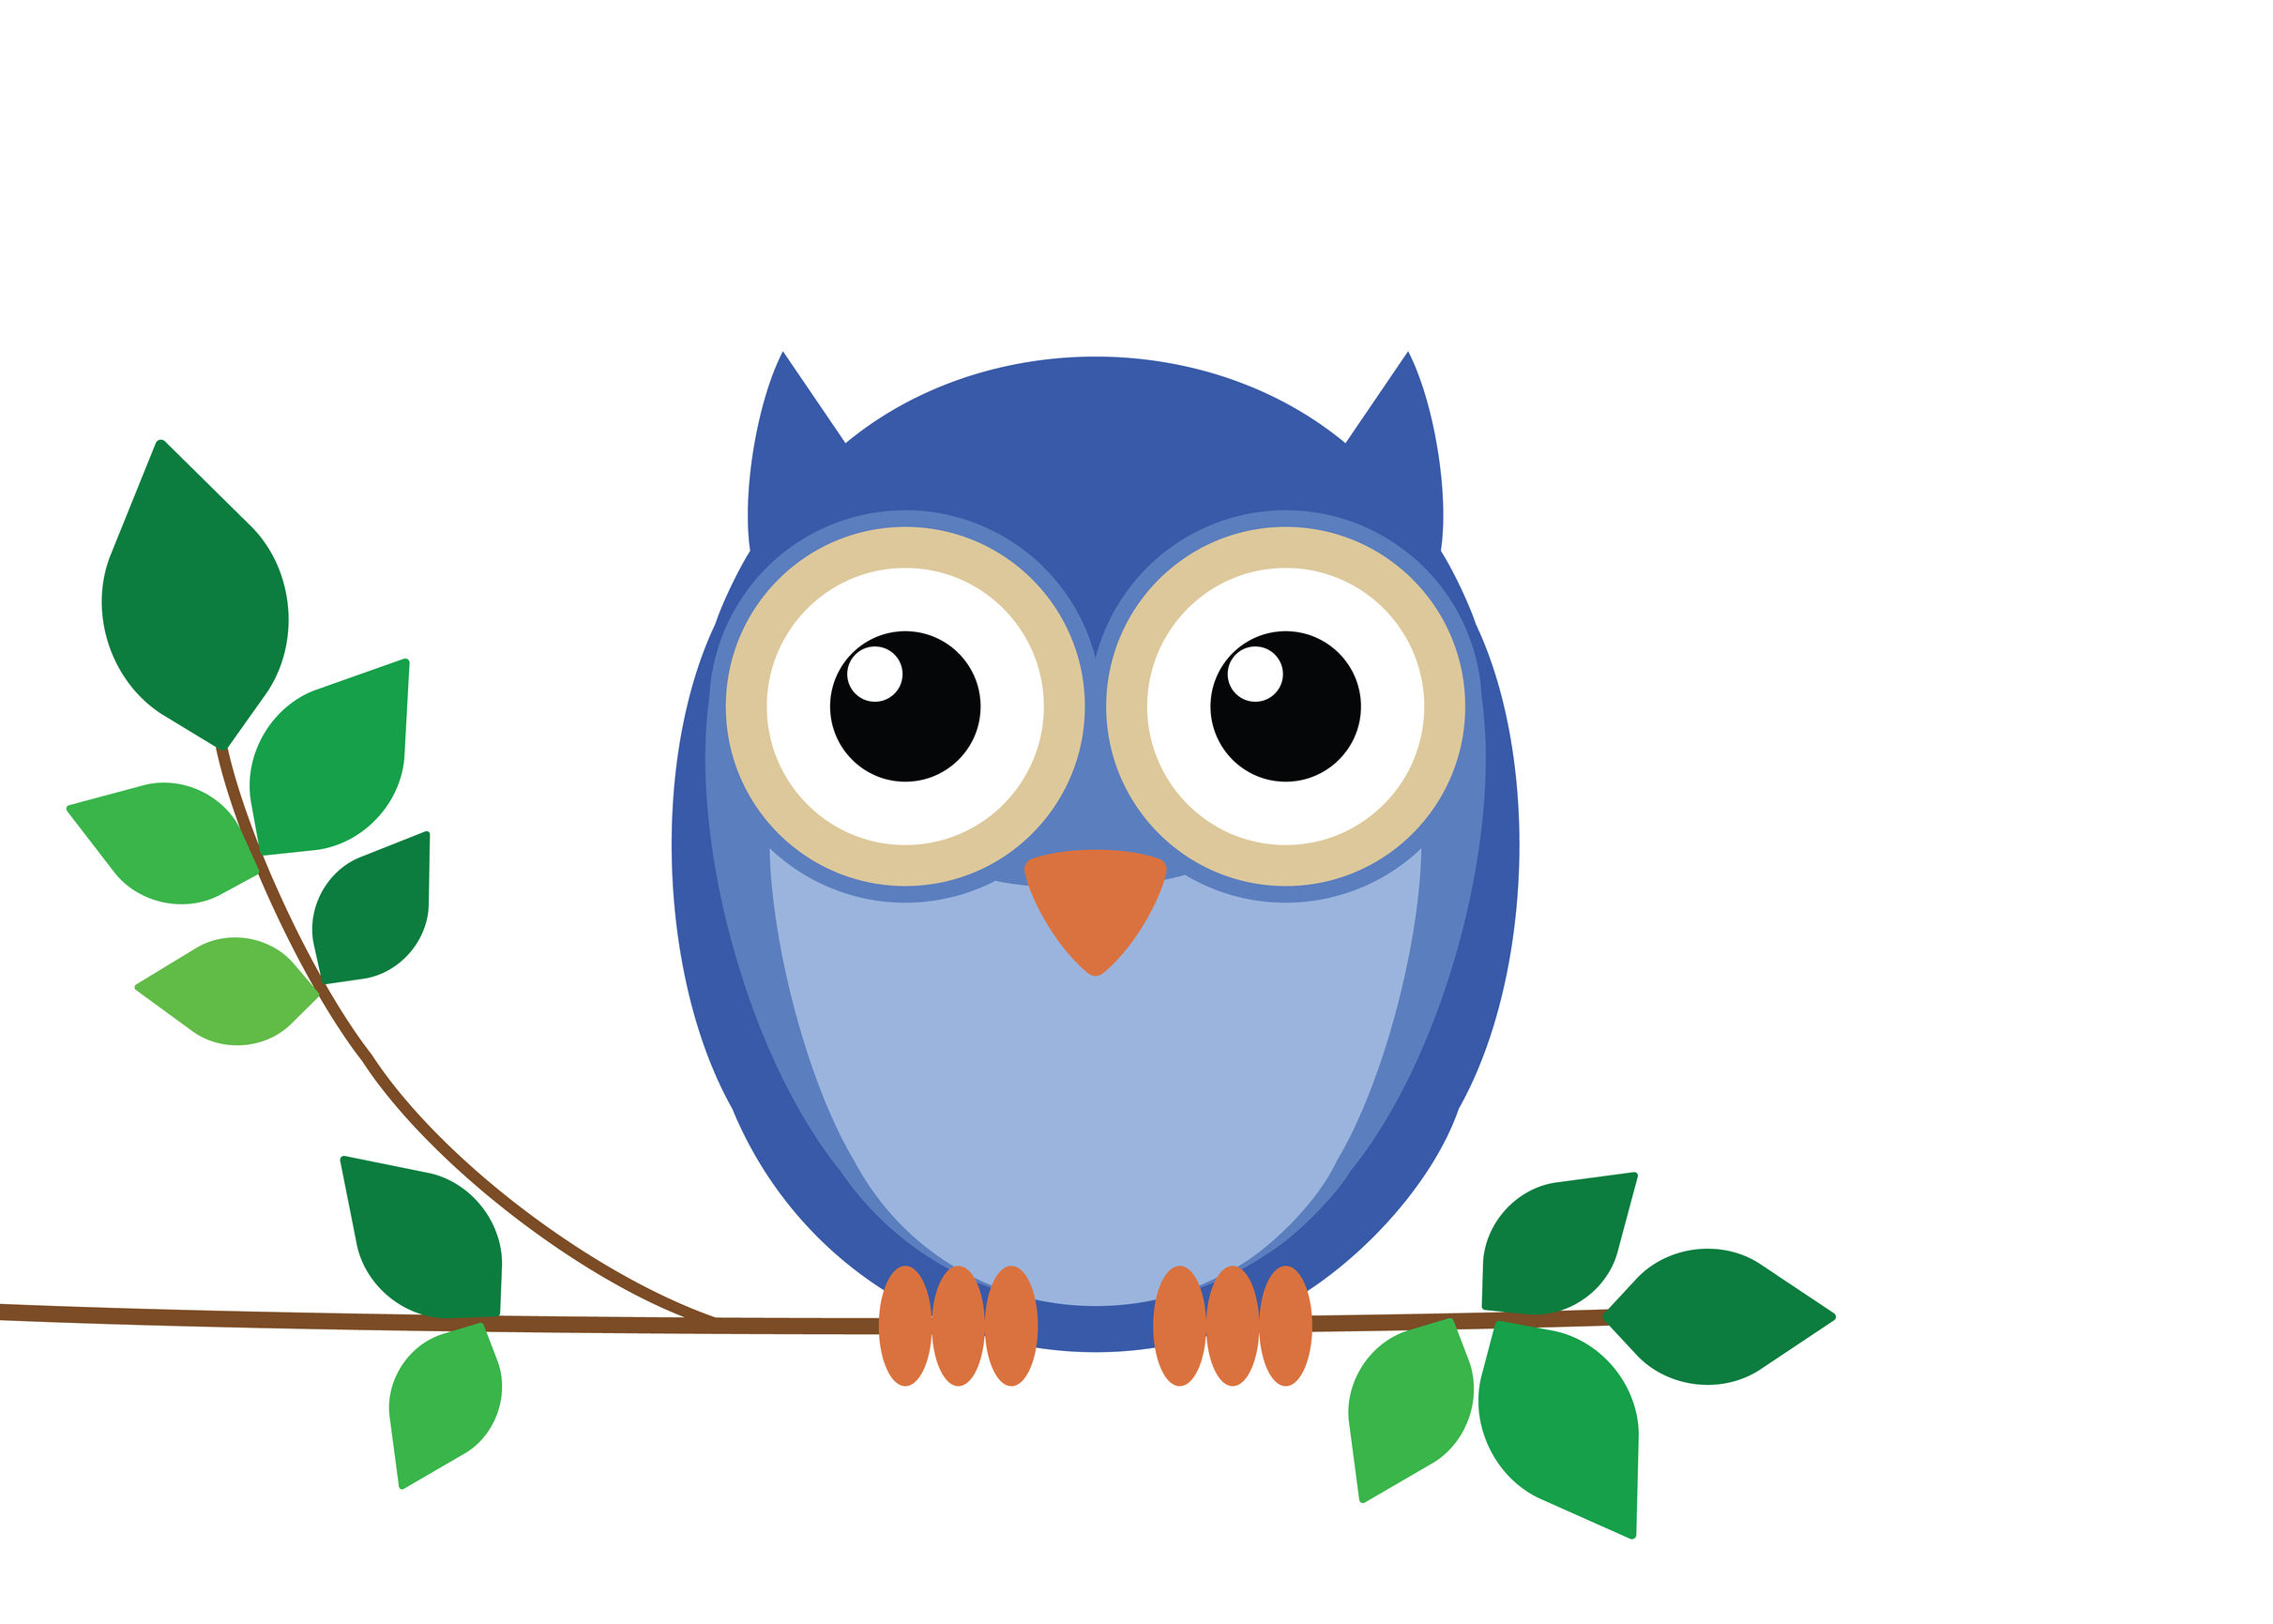 Free Printable Owl Drawing Free Image Download